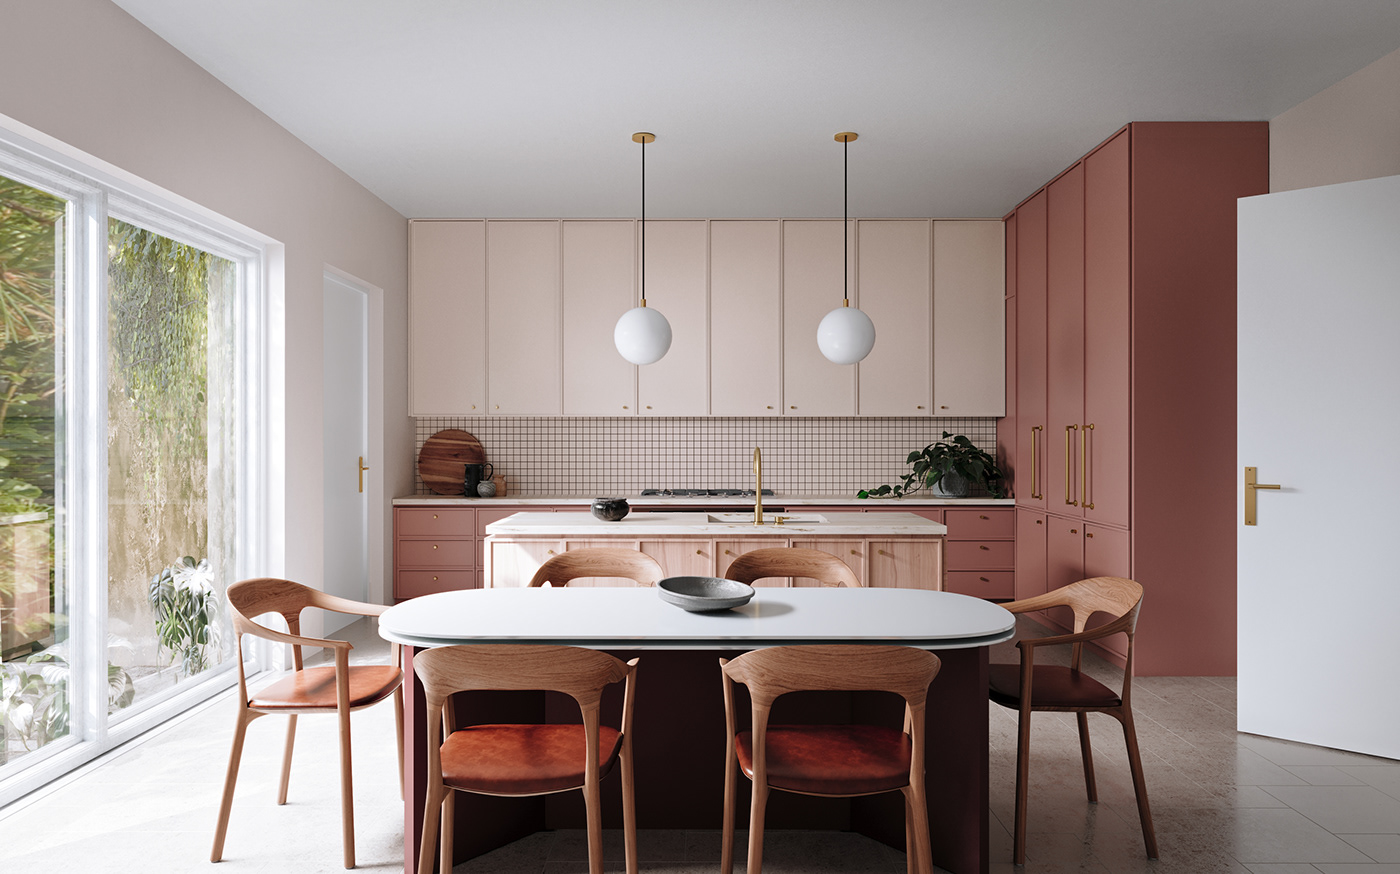 kitchen visualization archviz interior design  architecture 3ds max corona Render 3D modern